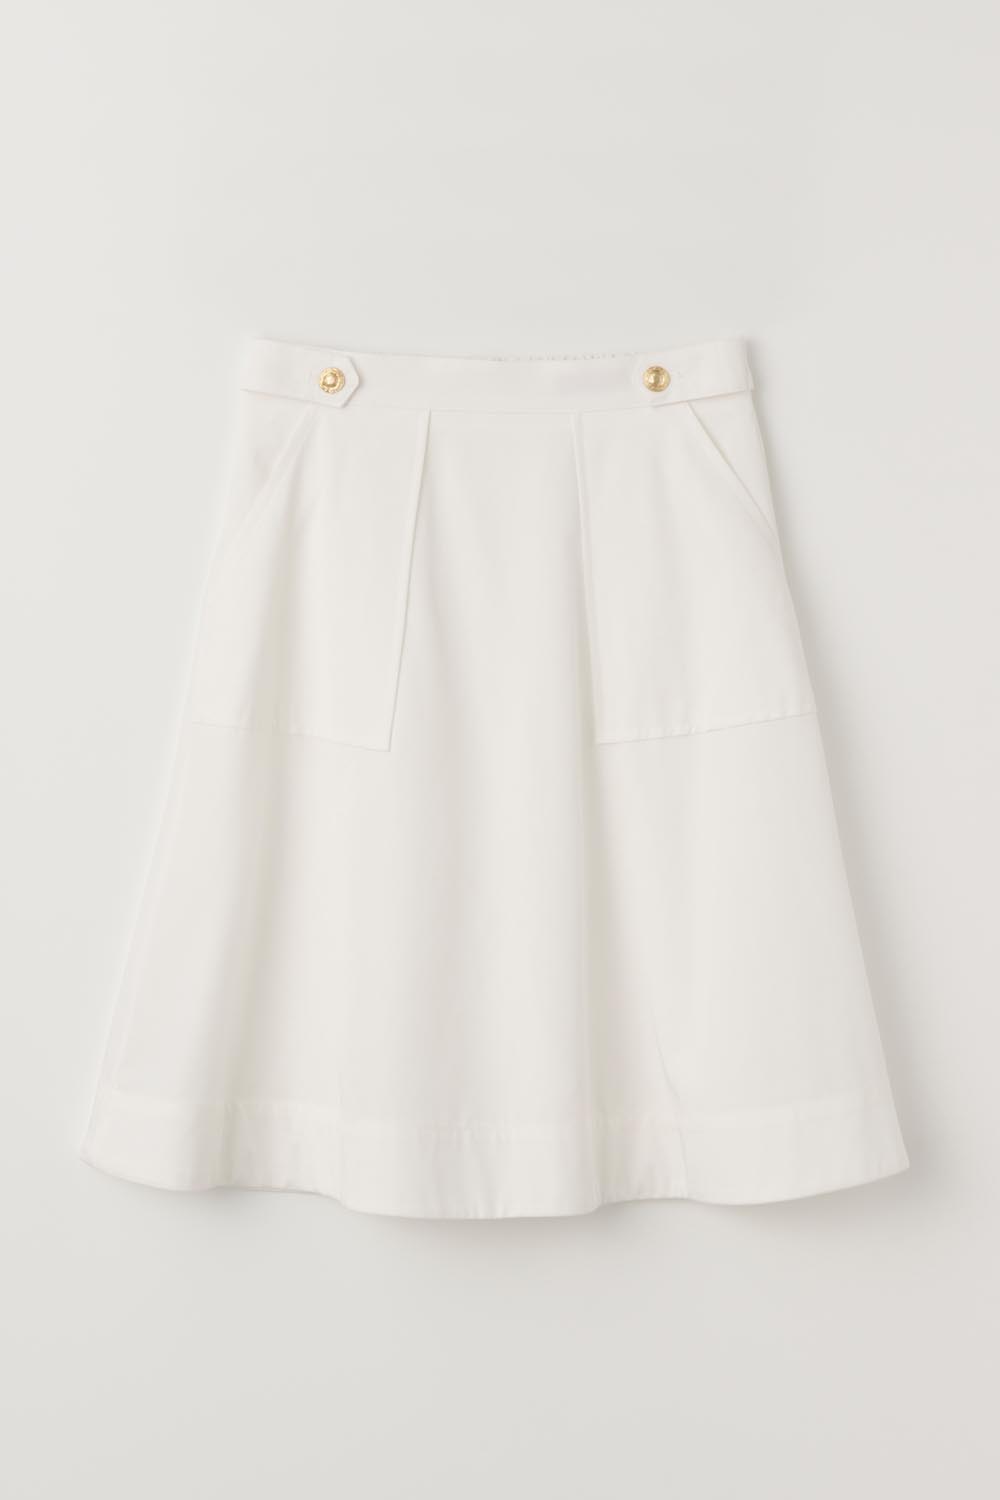 [6/12 예약배송]H Marine Midi Flare Skirt_White